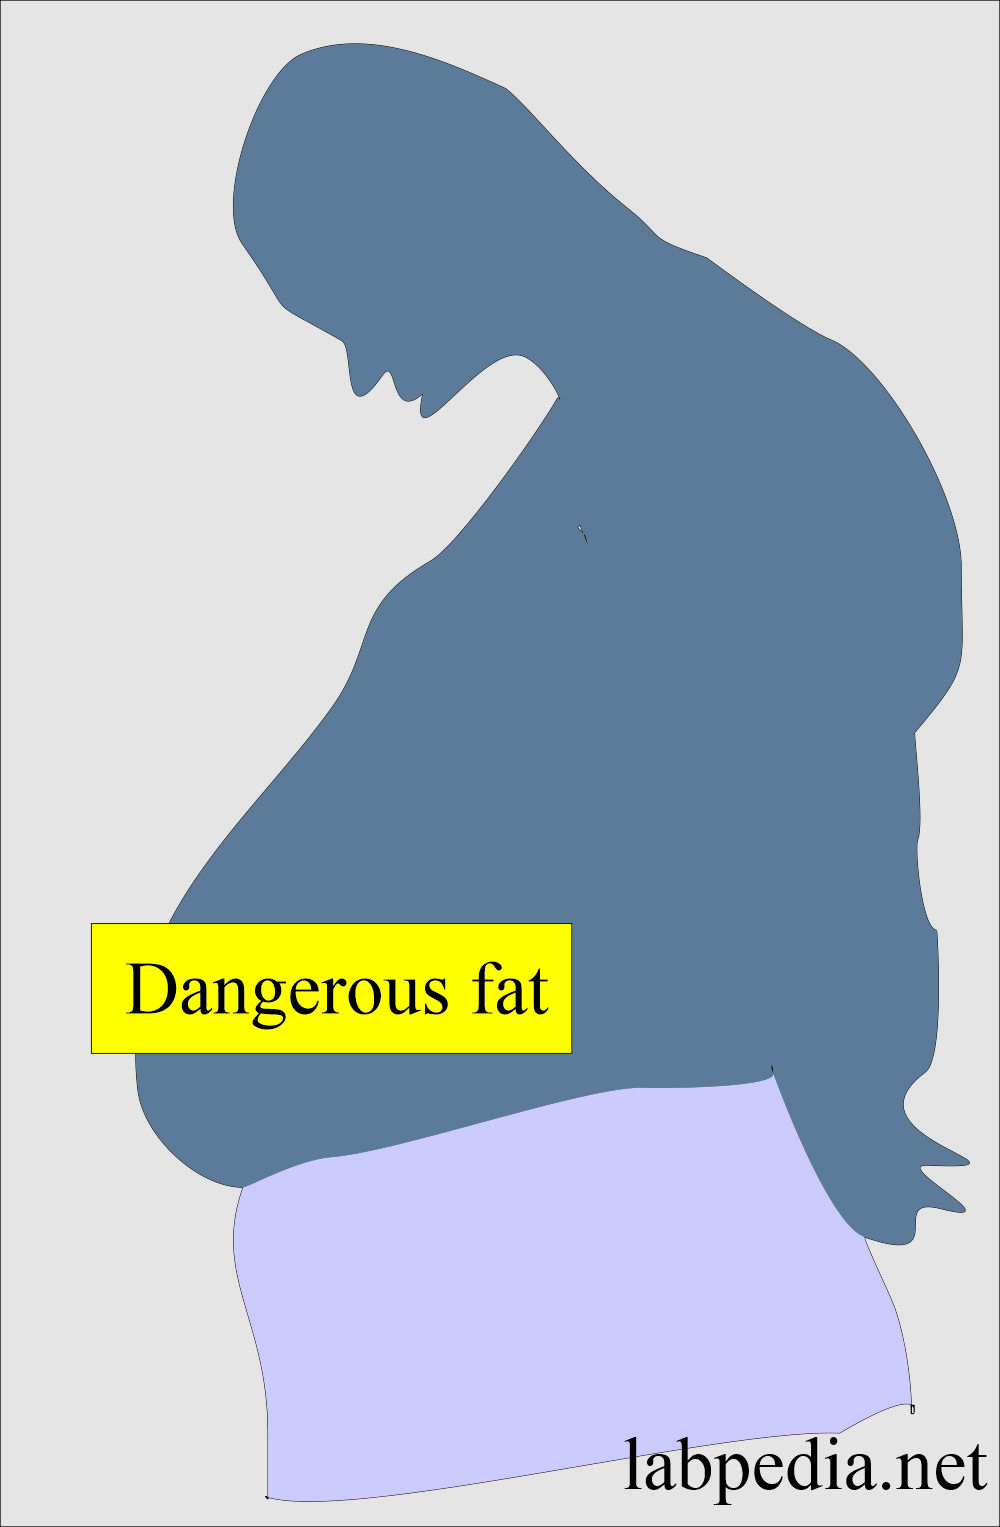 Belly fat is dangerous